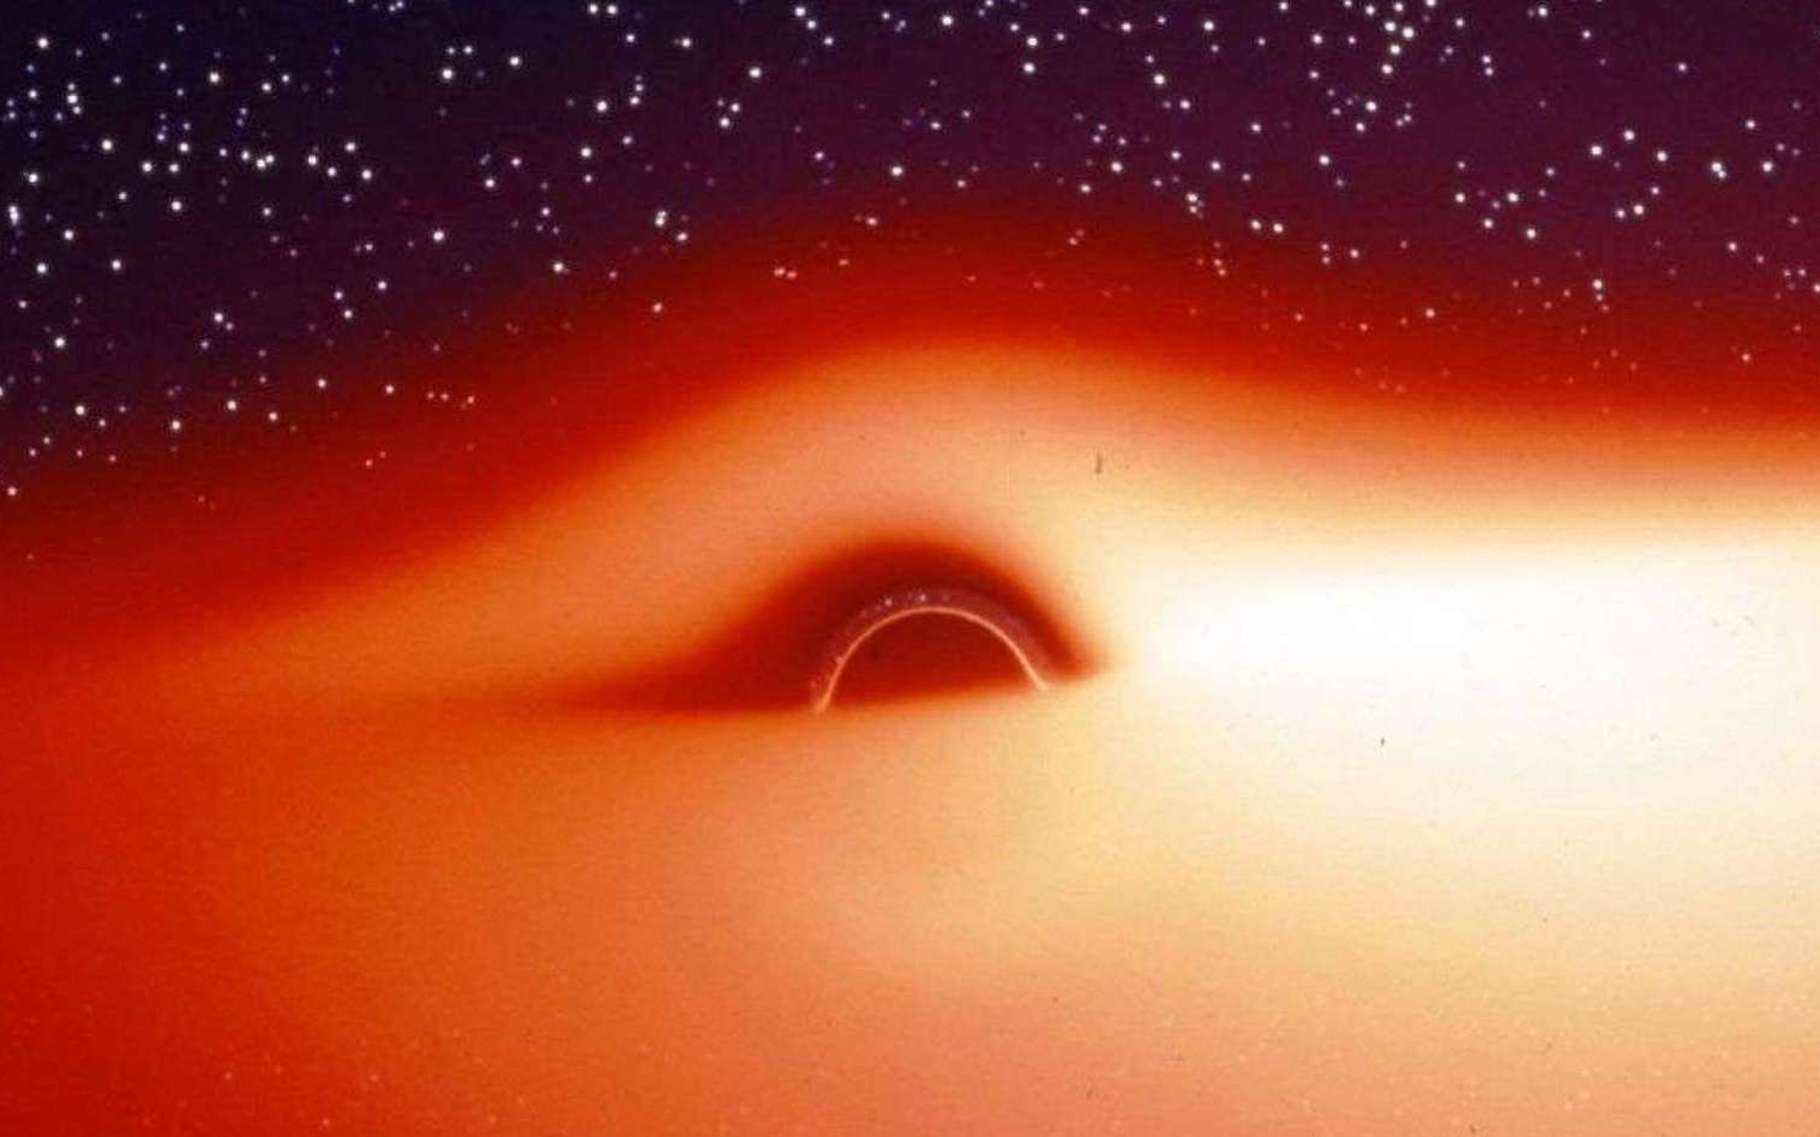 Le champ de gravitation d'un trou noir entouré d'un disque d'accrétion chaud et lumineux déforme fortement l'image de ce disque. Cette image, extraite d'une simulation, montre ce que verrait un observateur s'approchant de l'astre compact selon une direction légèrement inclinée au-dessus du disque d'accrétion. La partie du disque située derrière le trou noir semble tordue à 90° et devient visible. Jean-Pierre Luminet a fait la première simulation de ces images en 1979. © Jean-Pierre Luminet, Jean-Alain Marck